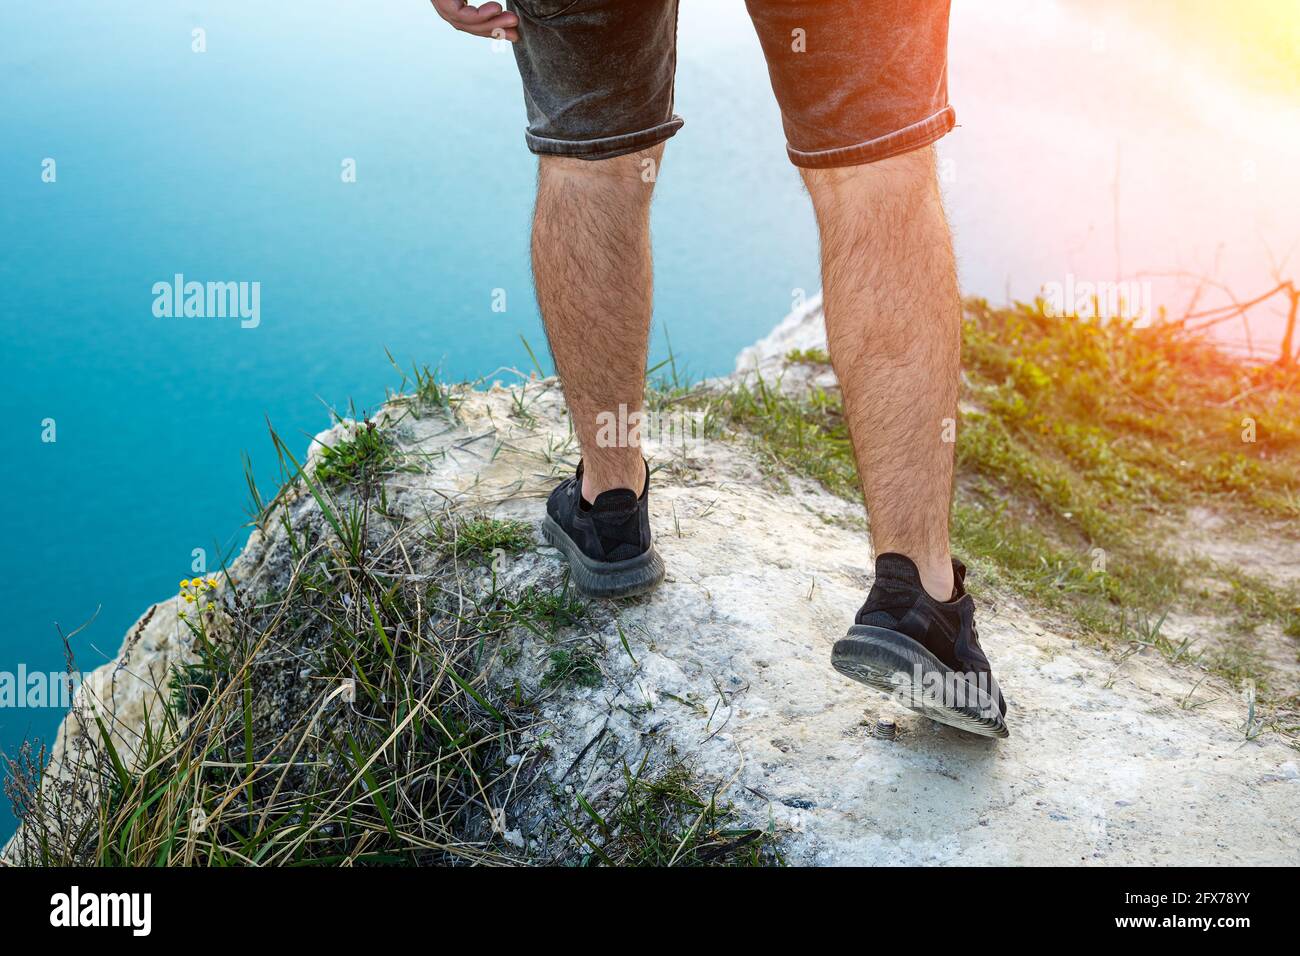 Typ in Shorts am Rand einer Klippe, die Beine aus der Nähe Stockfotografie  - Alamy